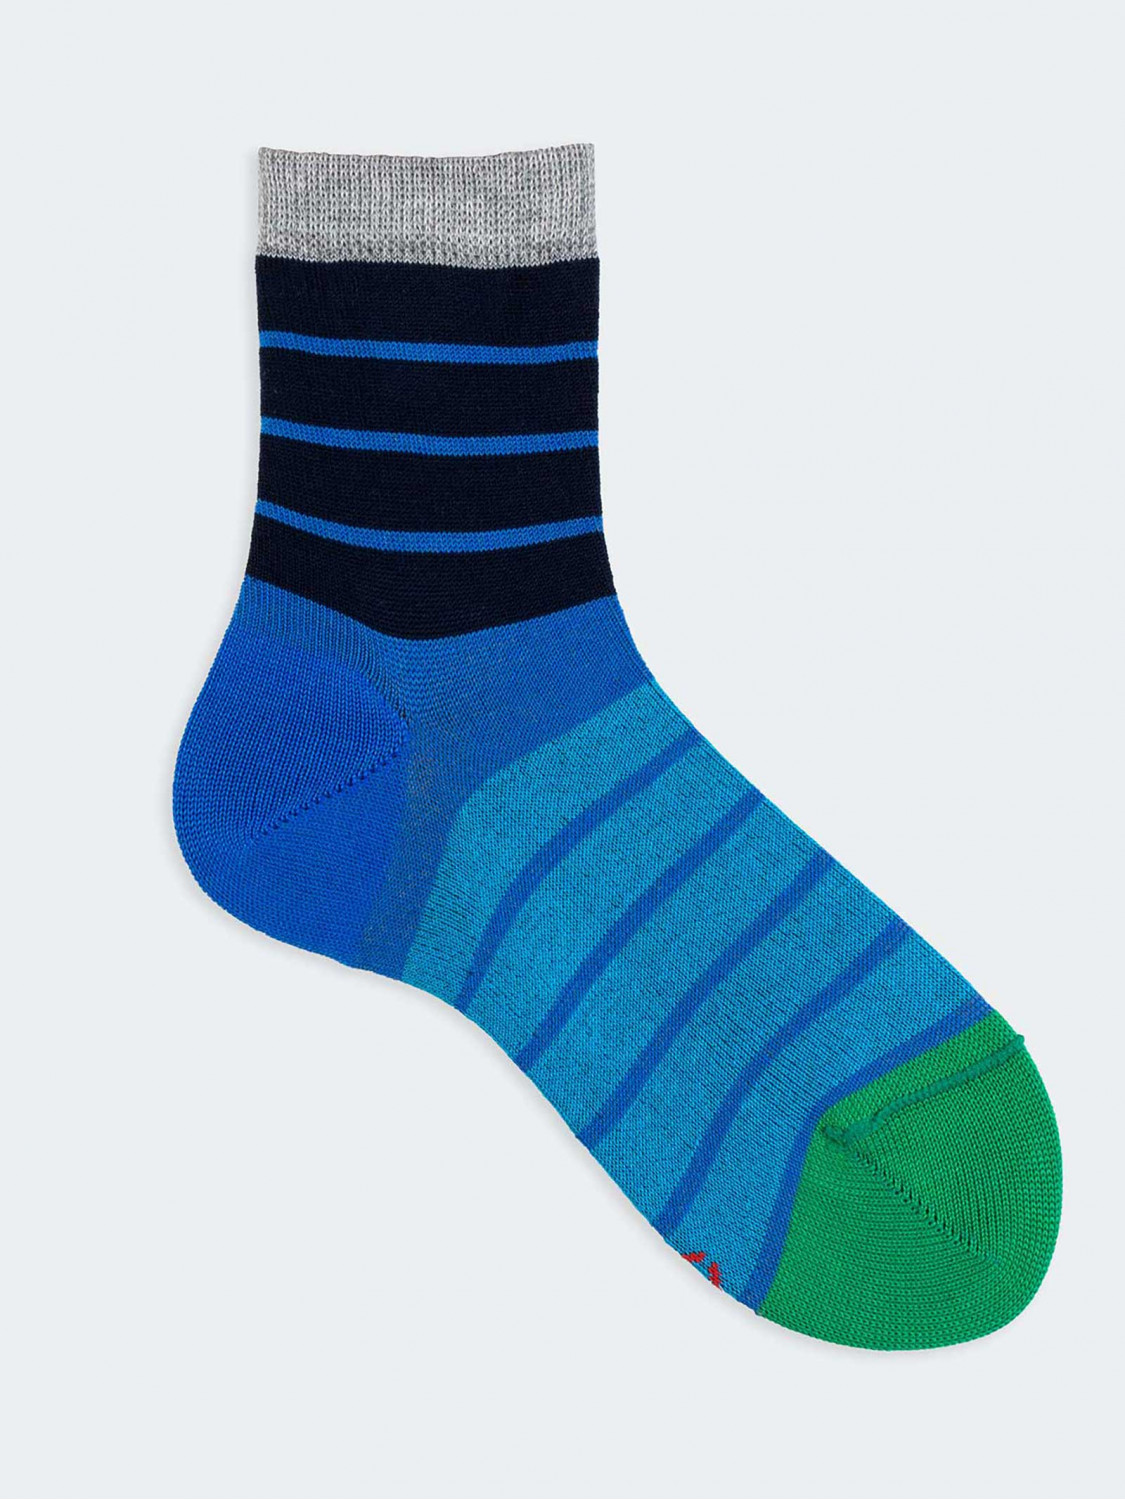 Kurze Socken für Jungen mit mehrfarbigen Streifen